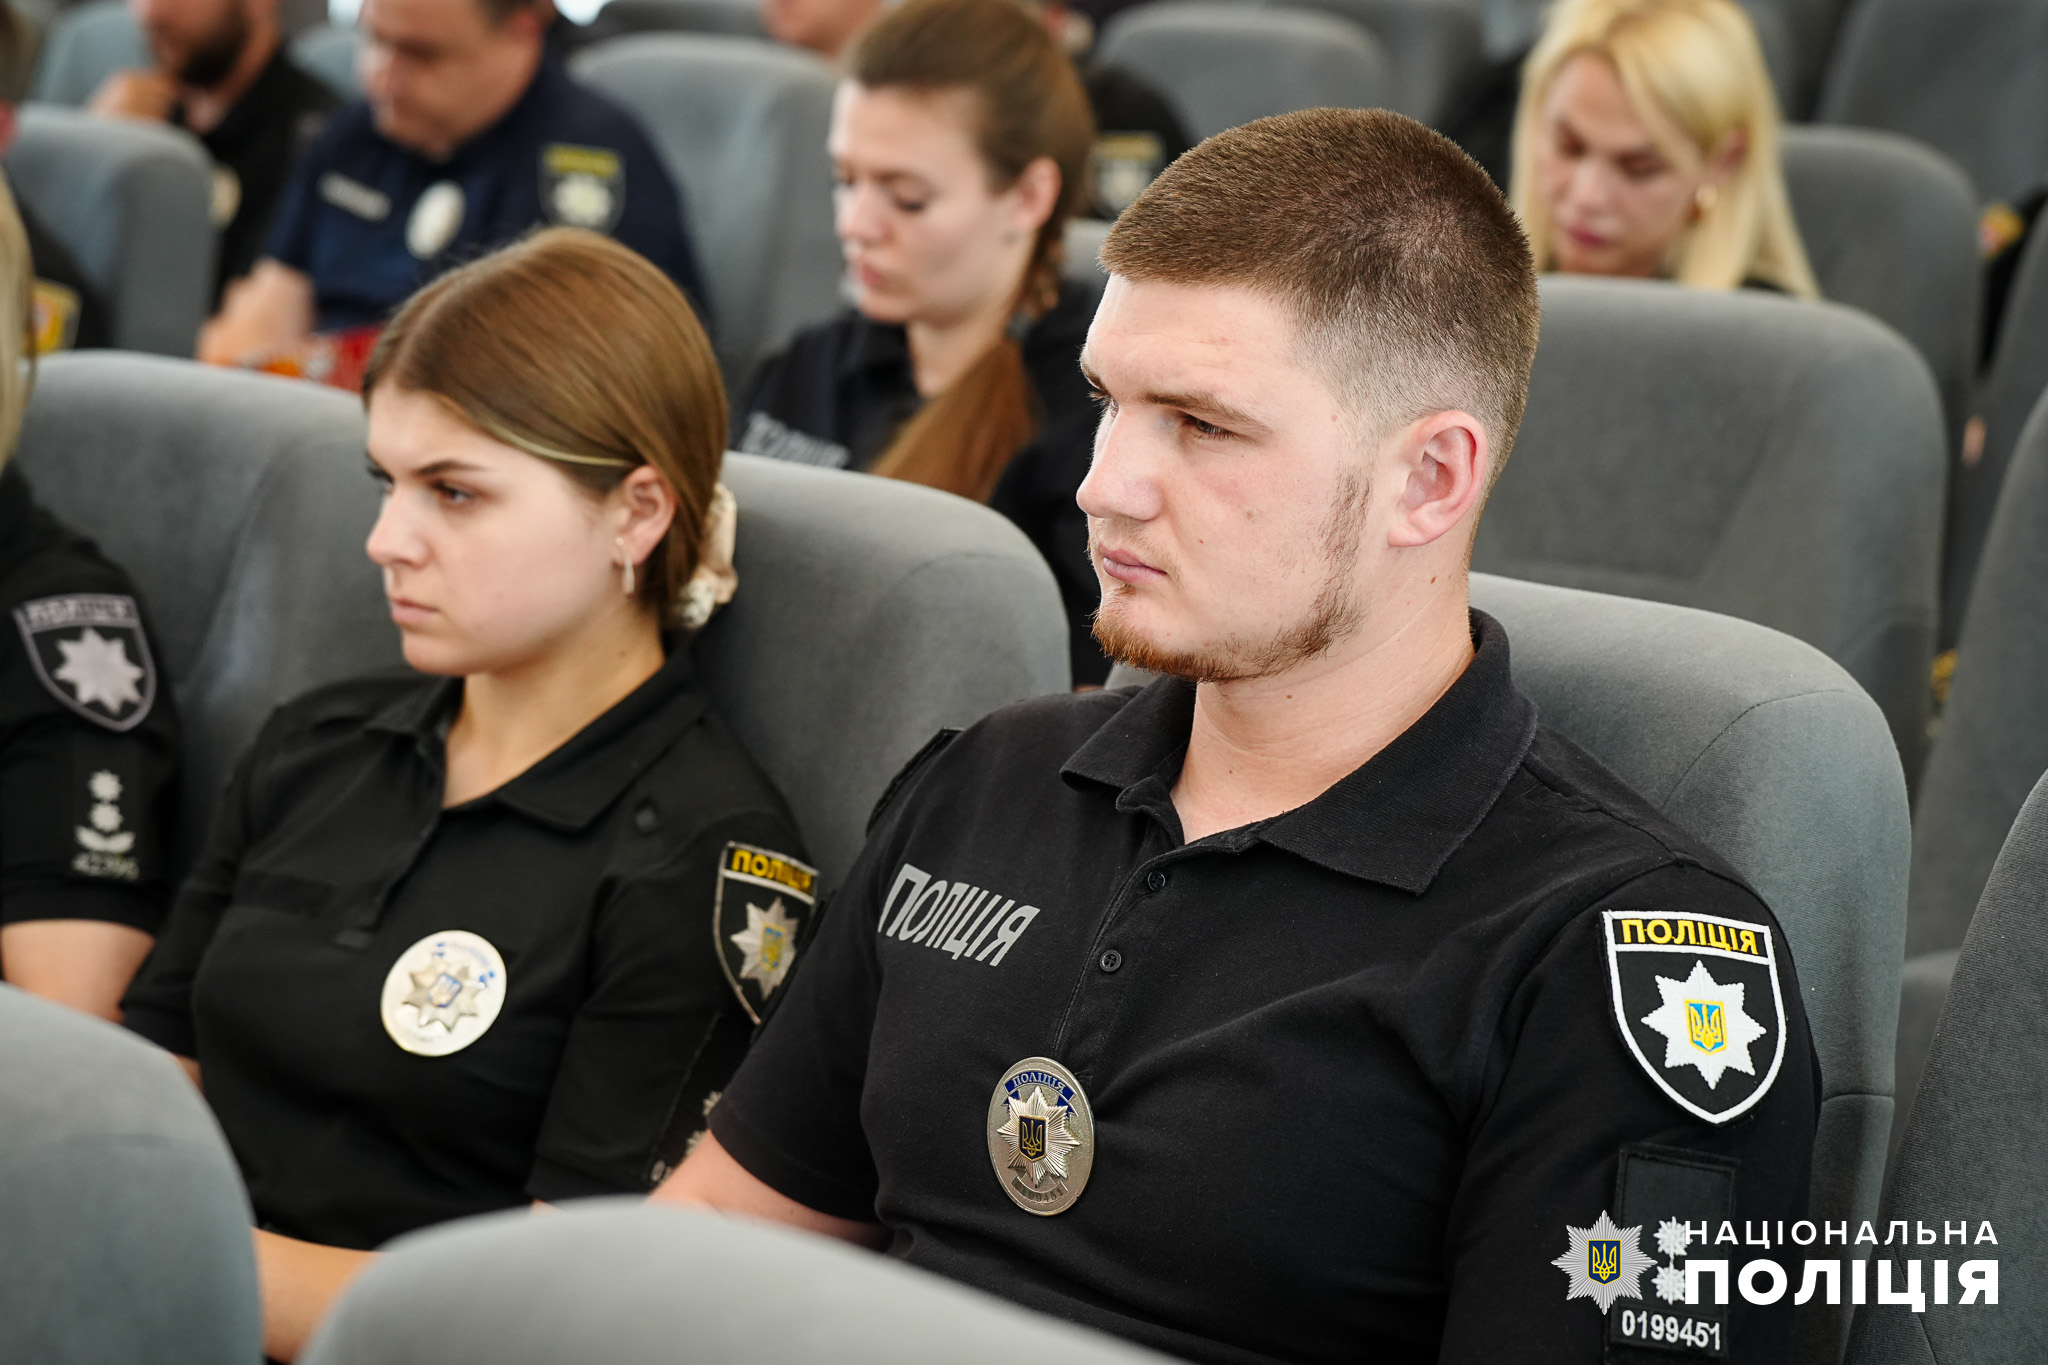 Близькі зниклих військовослужбовців зможуть отримати необхідну допомогу в новоствореному спеціалізованому центрі поліції на Одещині